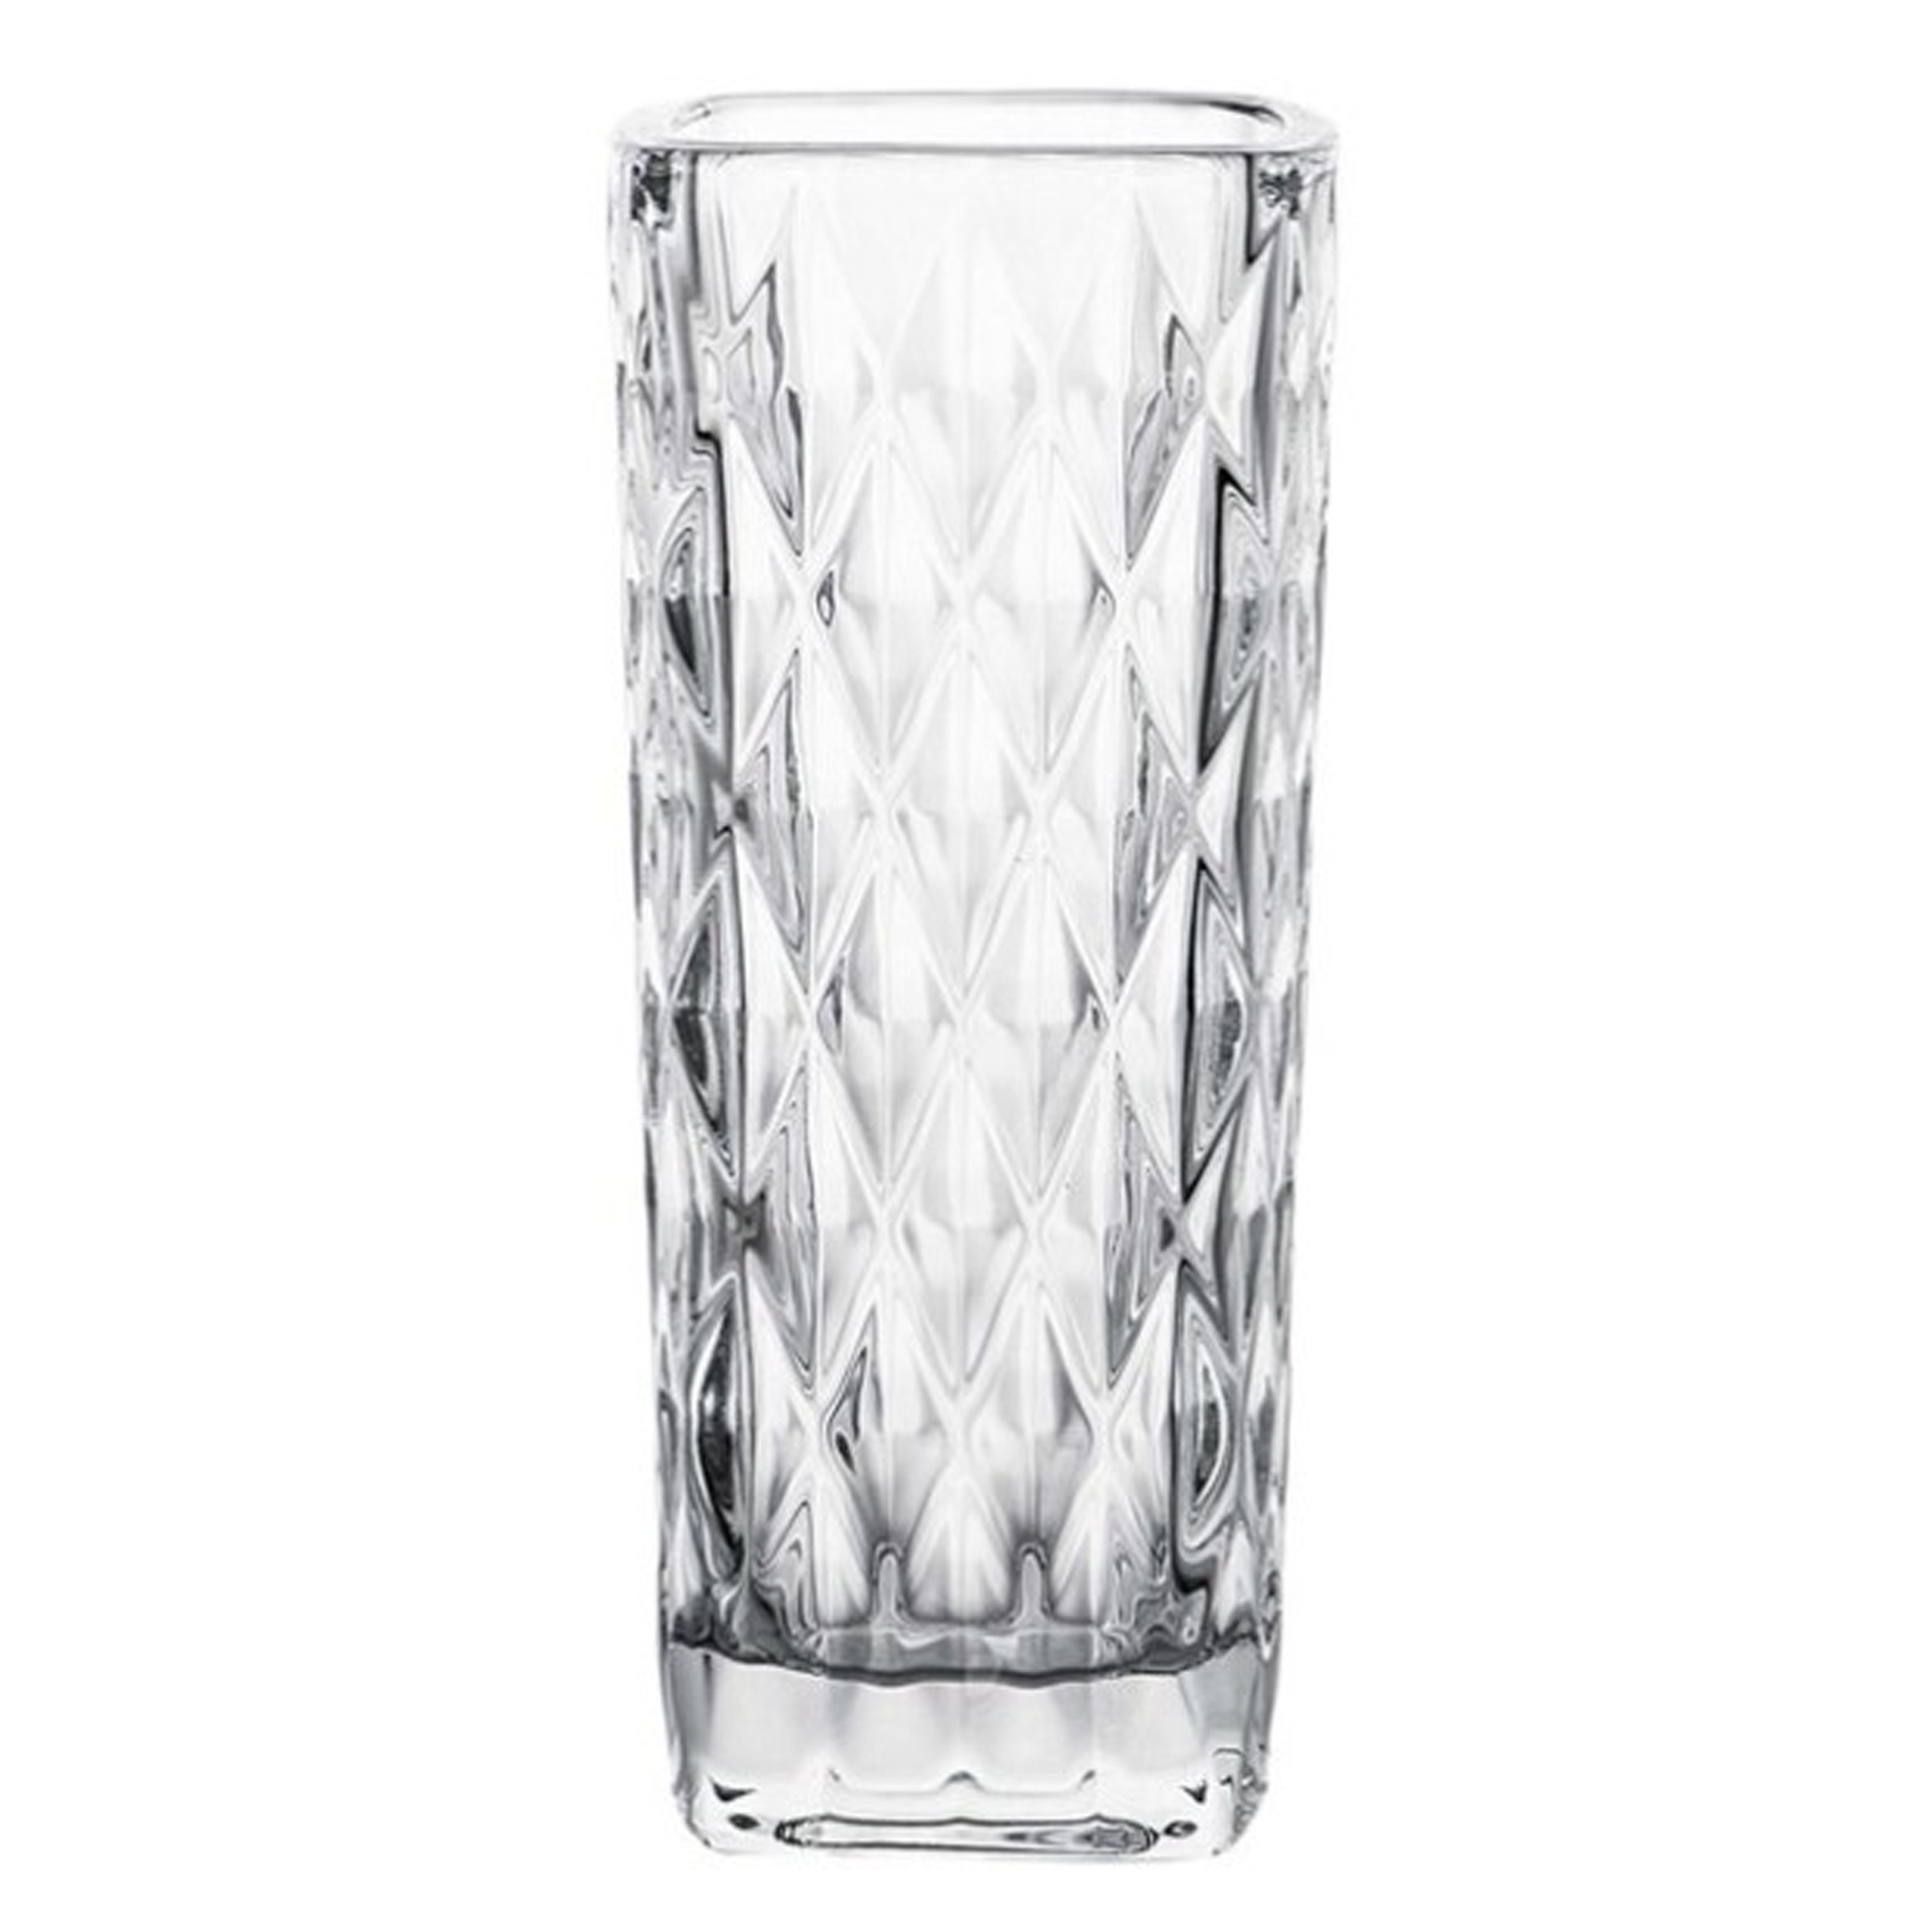 Gerimport Bloemenvaasje - voor kleine stelen/boeketten - helder glas - D6 x H15 cm -